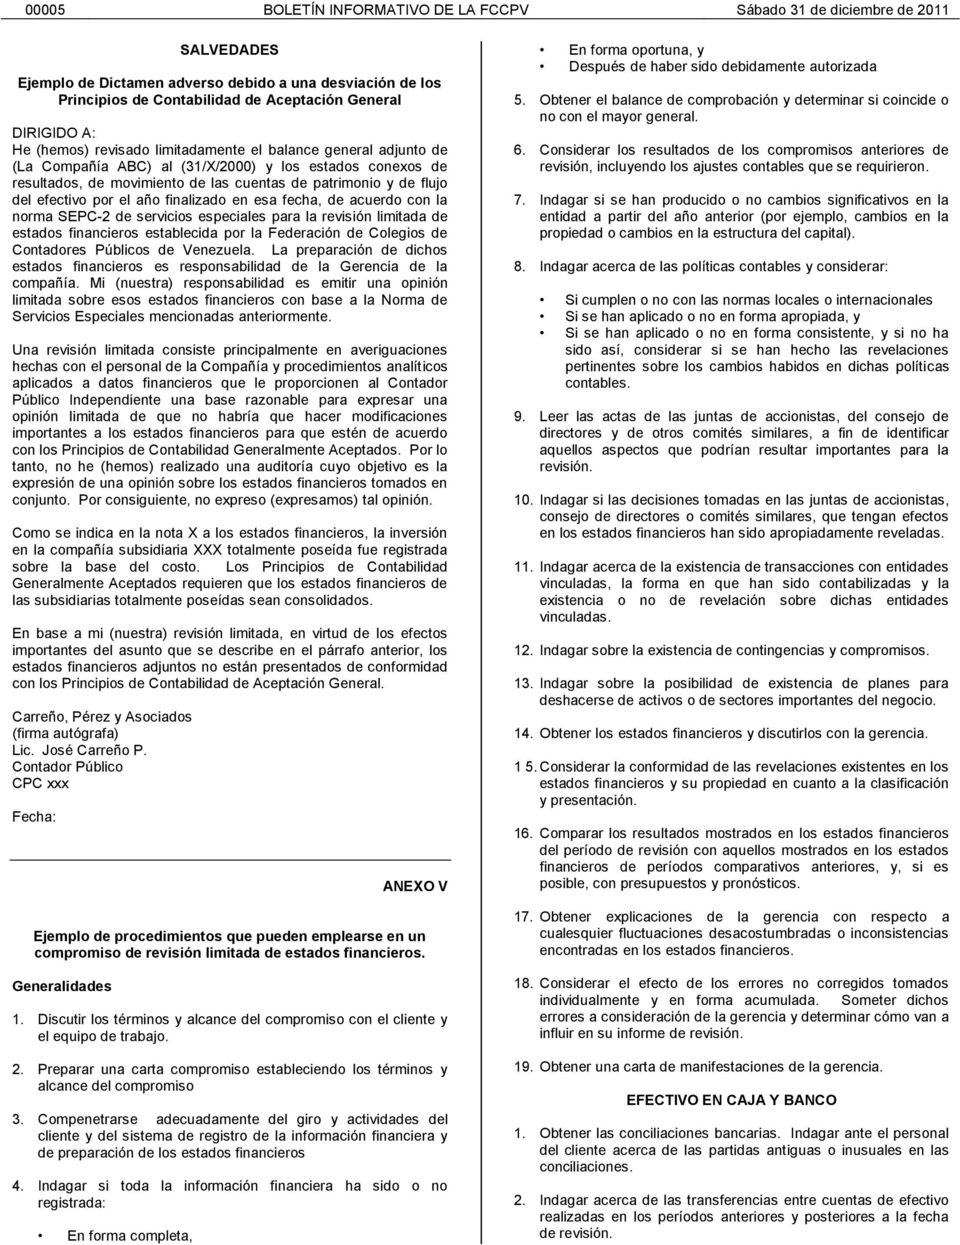 de servicios especiales para la revisión limitada de estados financieros establecida por la Federación de Colegios de Contadores Públicos de Venezuela.